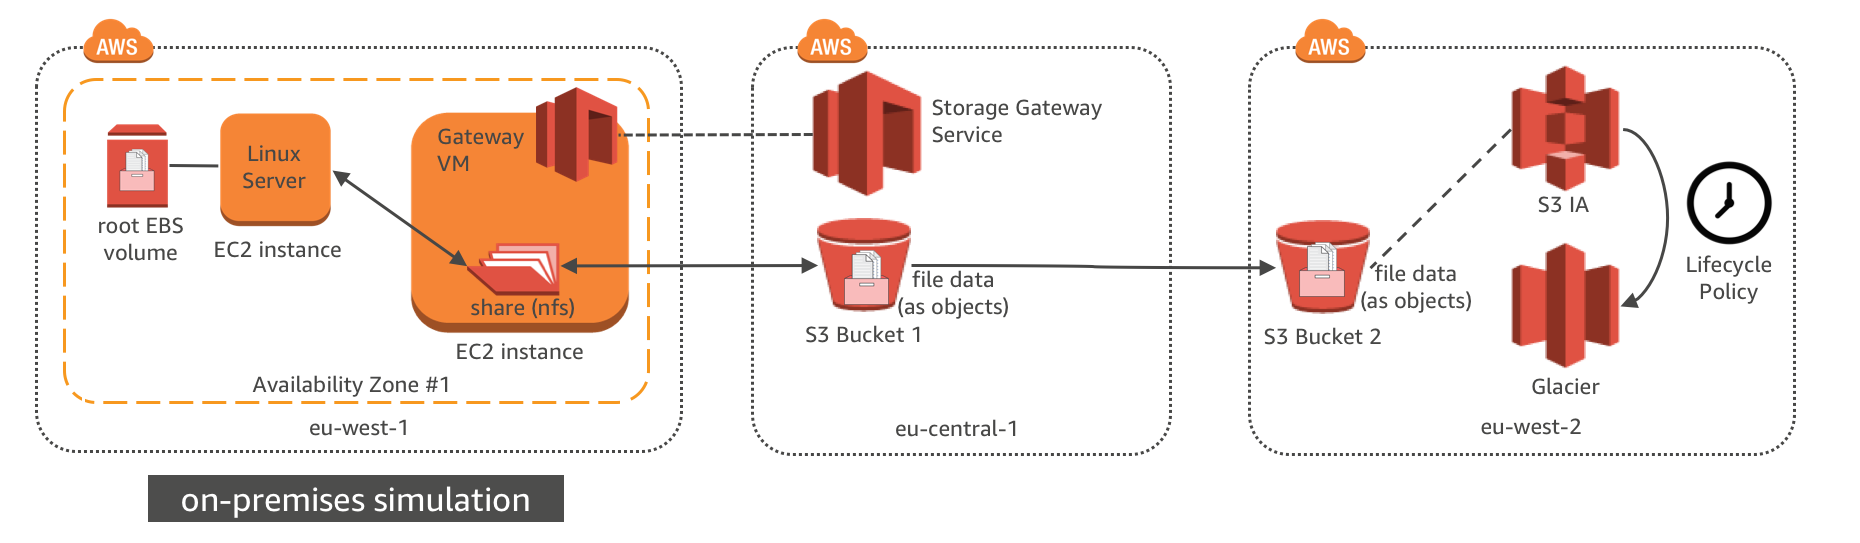 File Gateway Scenario Architecture